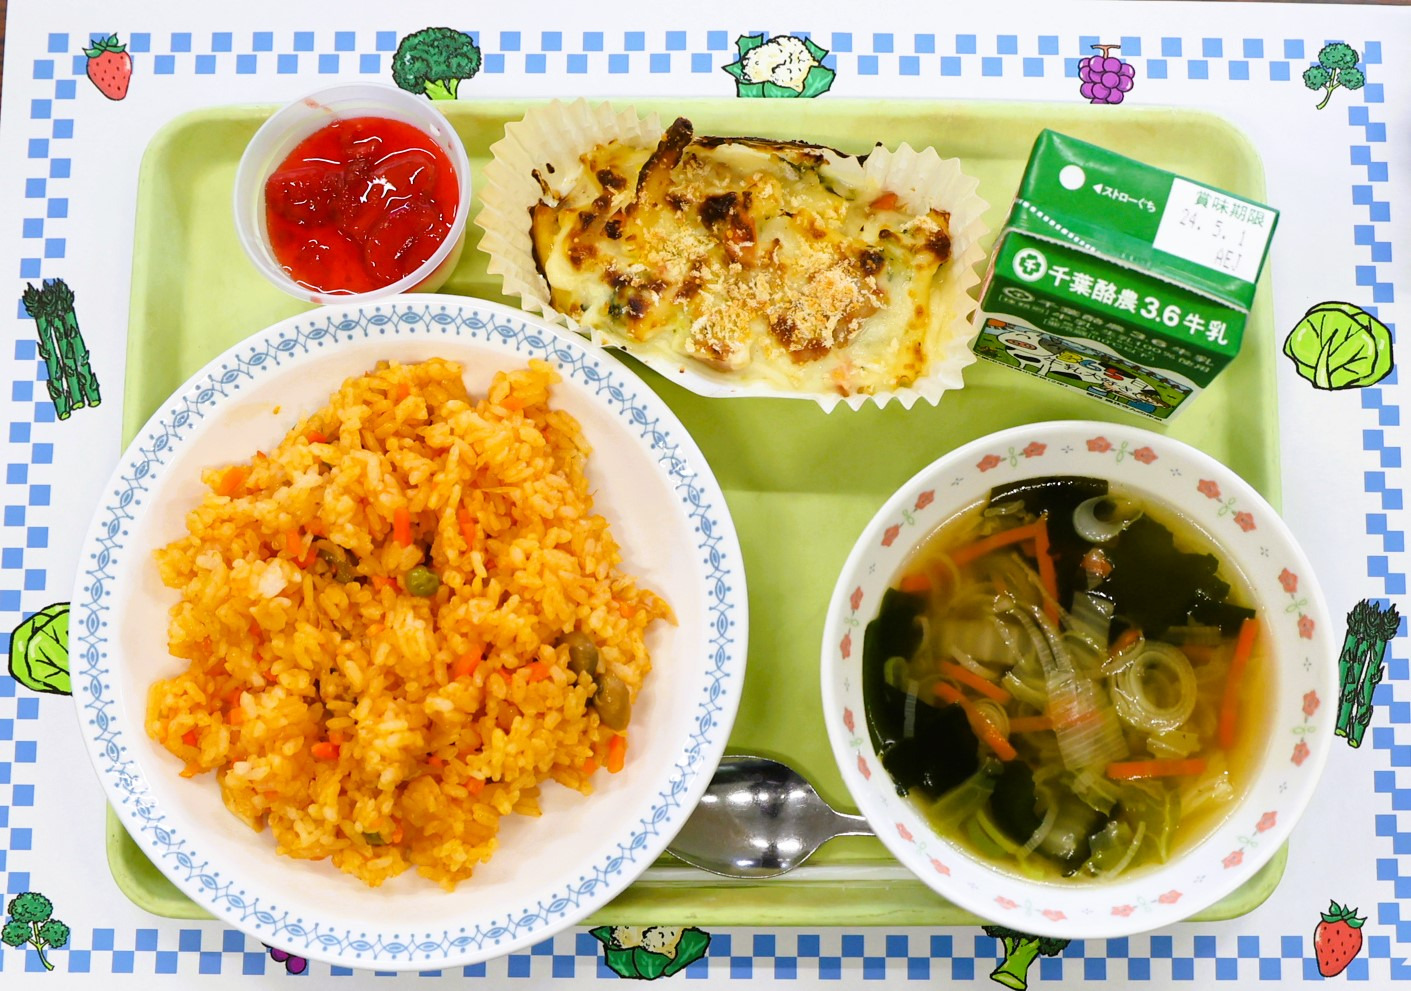 佐倉市内の小学校で提供された「津田仙メニュー」給食（ブロッコリーとアスパラのグラタン、チキンライス、イチゴのパンナコッタなど）